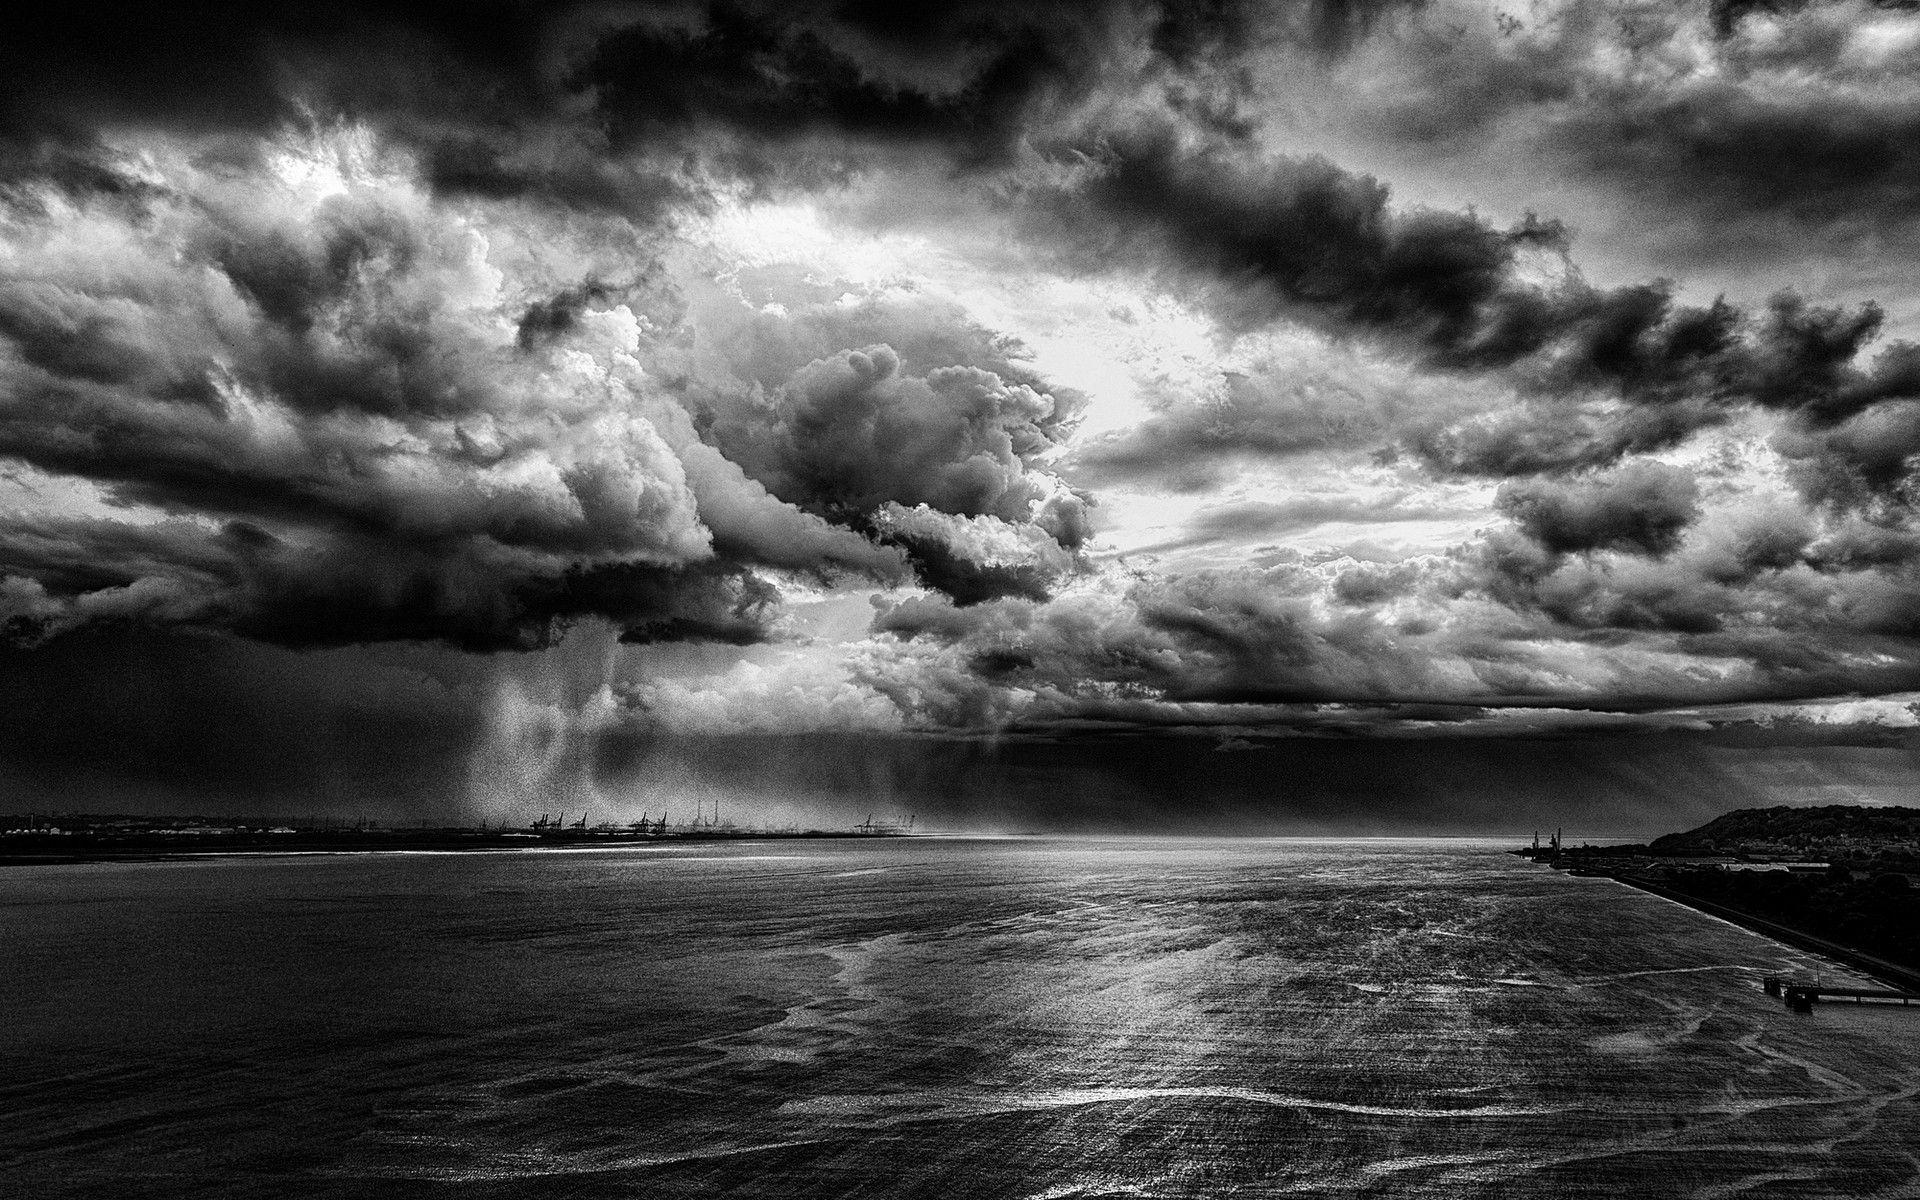 nature, Landscape, Storm, Rain, Monochrome, Clouds, River, Dock